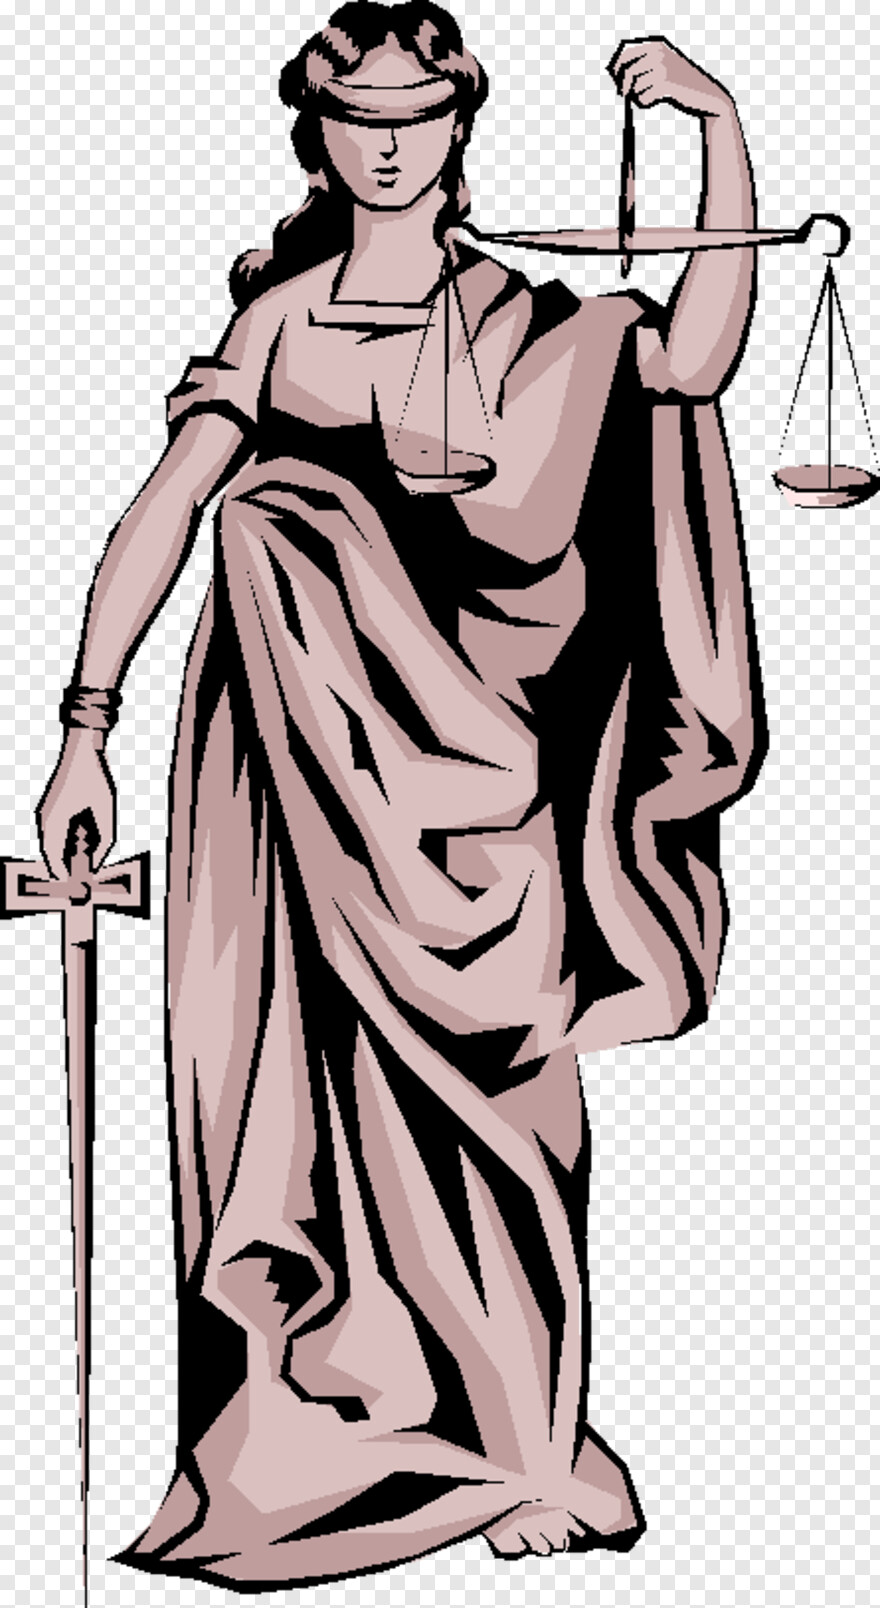 Scales Of Justice, Justice League Logo, Justice, Victoria Justice